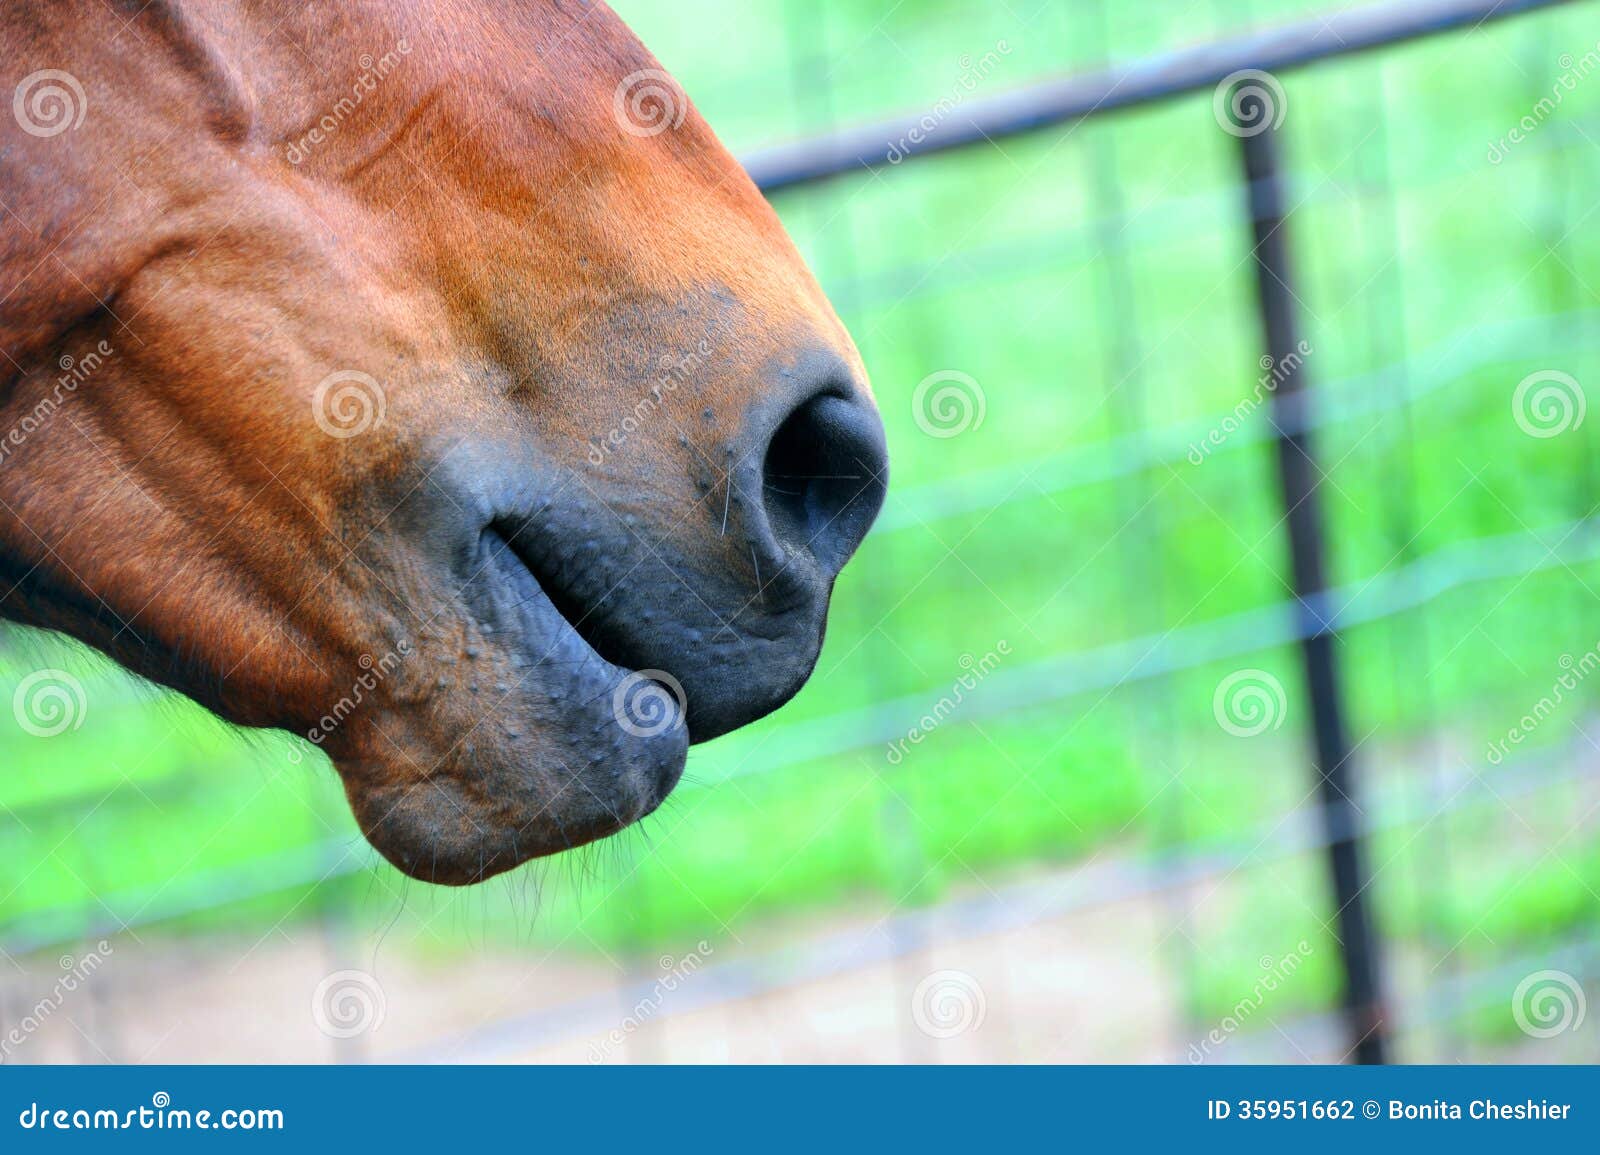 Nosey. Kaganiec kwartalny koń siedzi w kącie fotografia z płotową i zieloną trawą w tle.